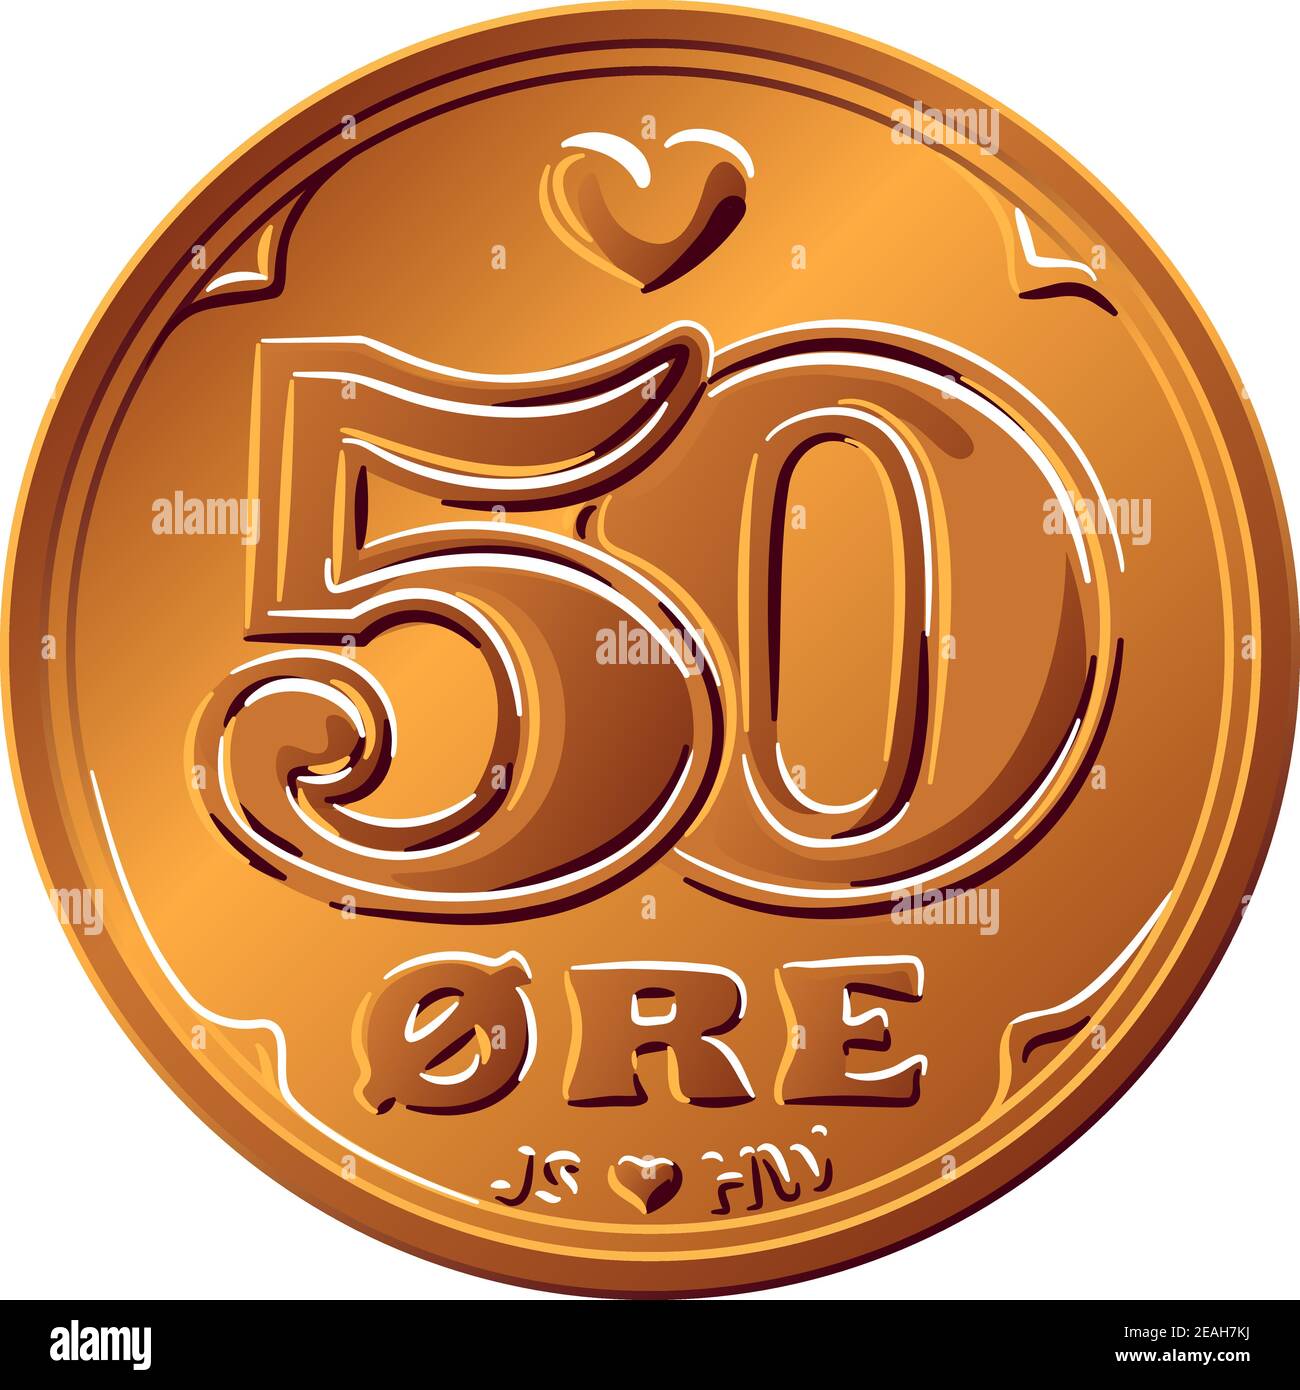 Obverse di denaro danese stagno-bronzo moneta 50 ore. Krone, valuta ufficiale della Danimarca, della Groenlandia e delle Isole Faroe. Illustrazione Vettoriale